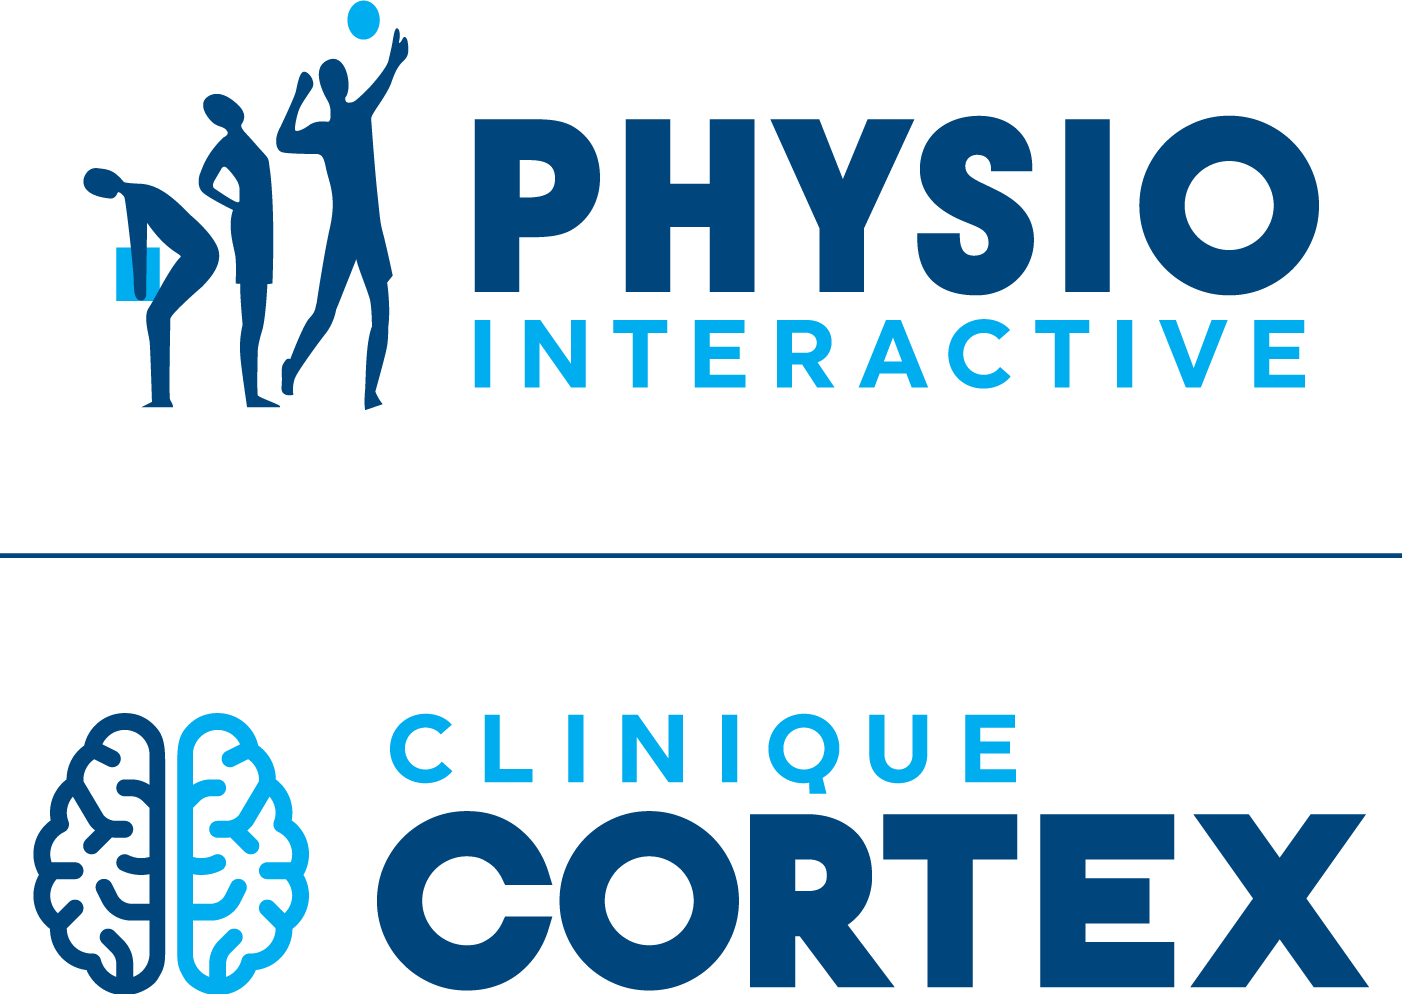 Clinique Cortex – Physio Interactive COMACTION